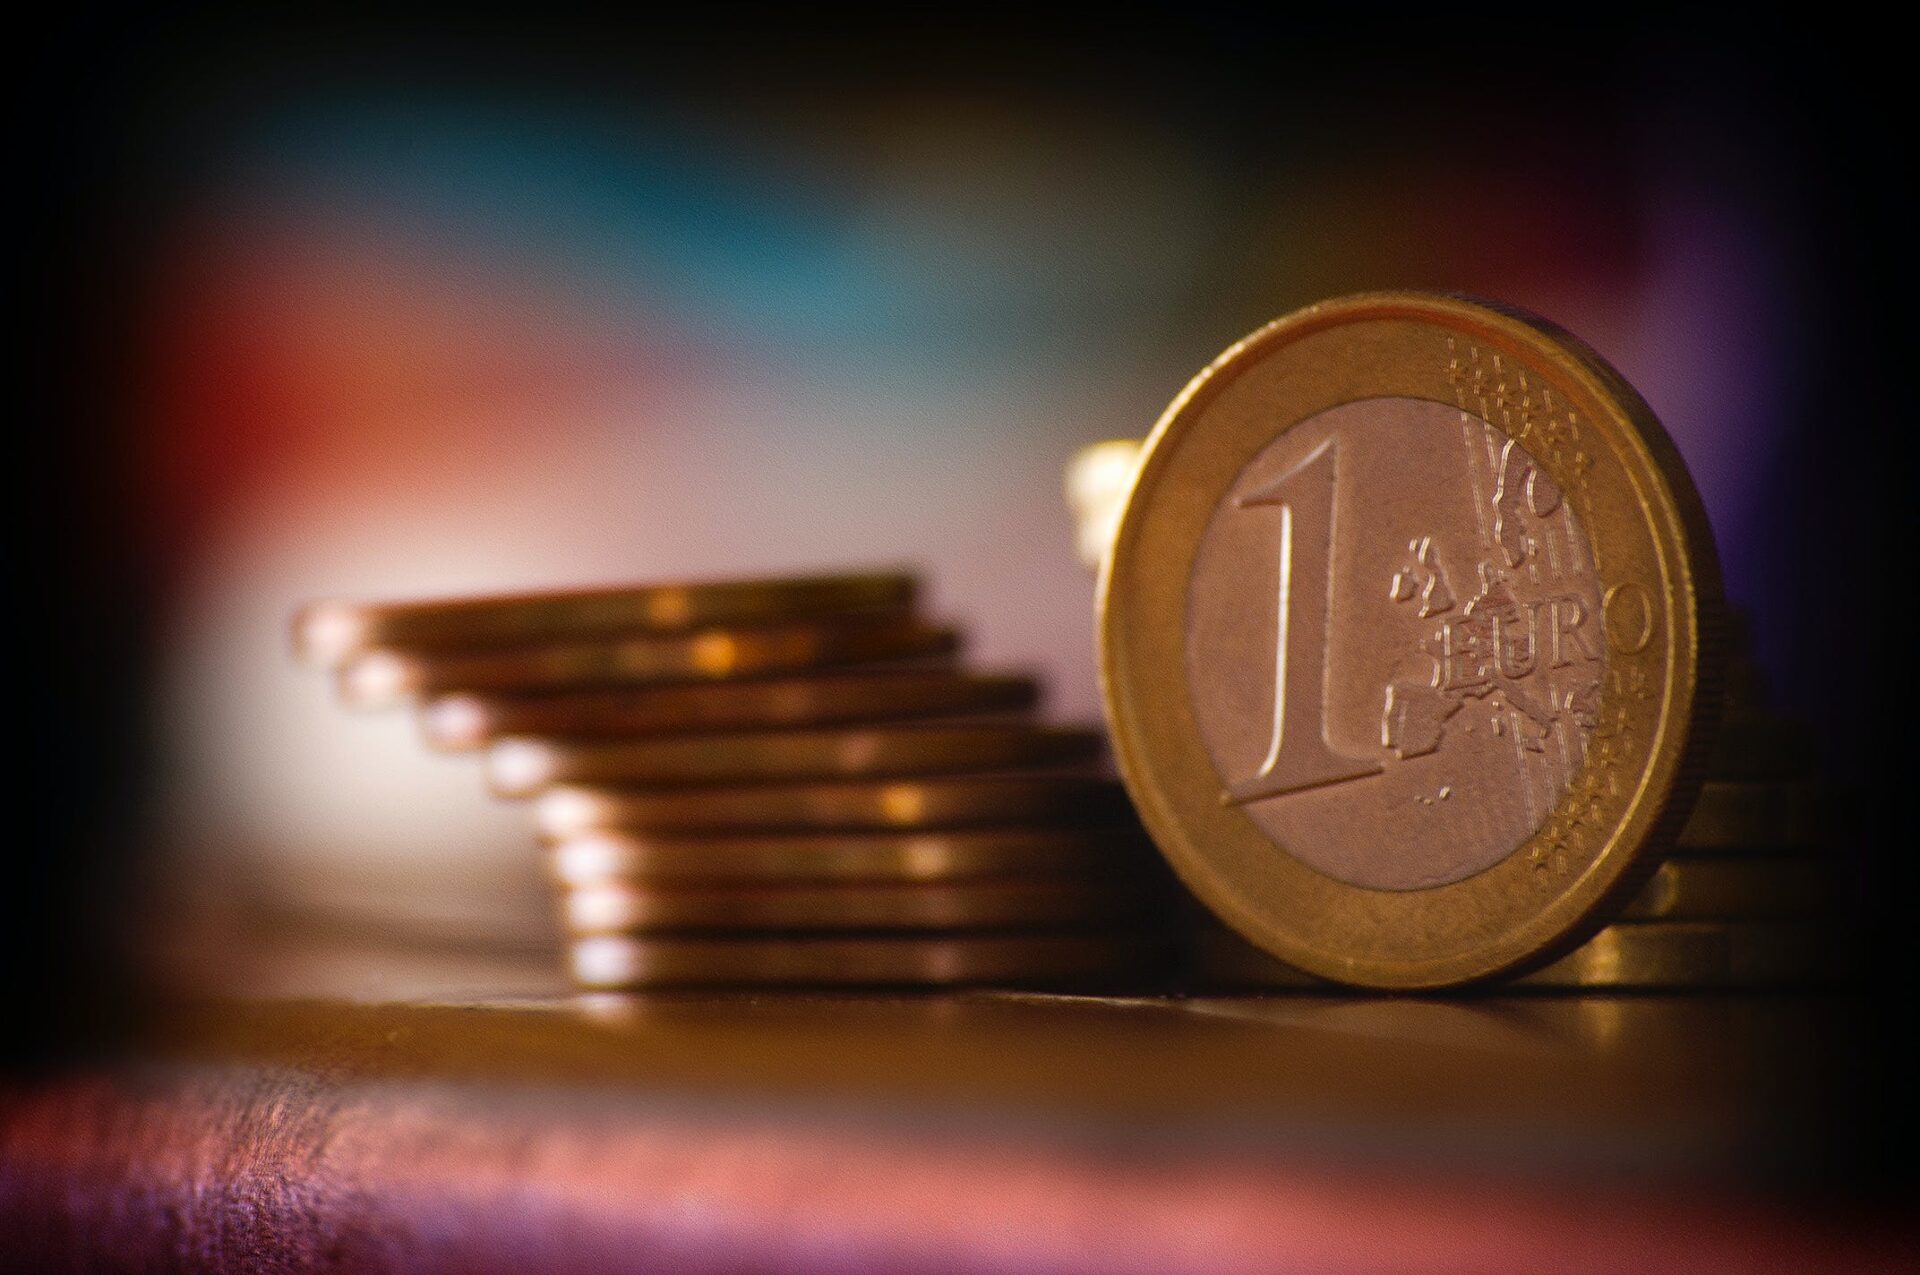 monety 1 euro ustawione jedna na drugiej